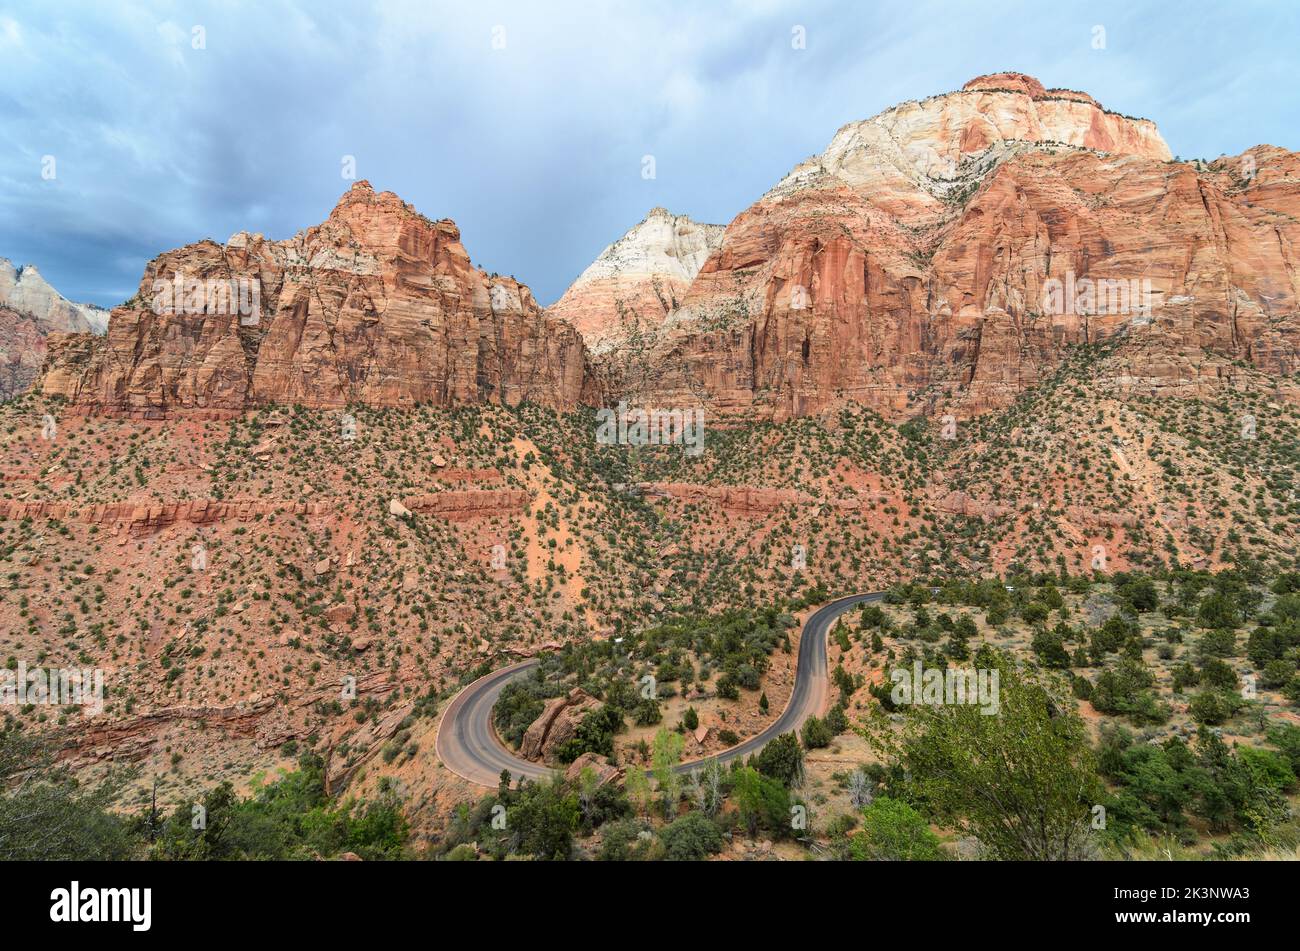 Les routes sinueuses du parc national de Zion Canyon sous un ciel orageux dans l'Utah, aux États-Unis Banque D'Images